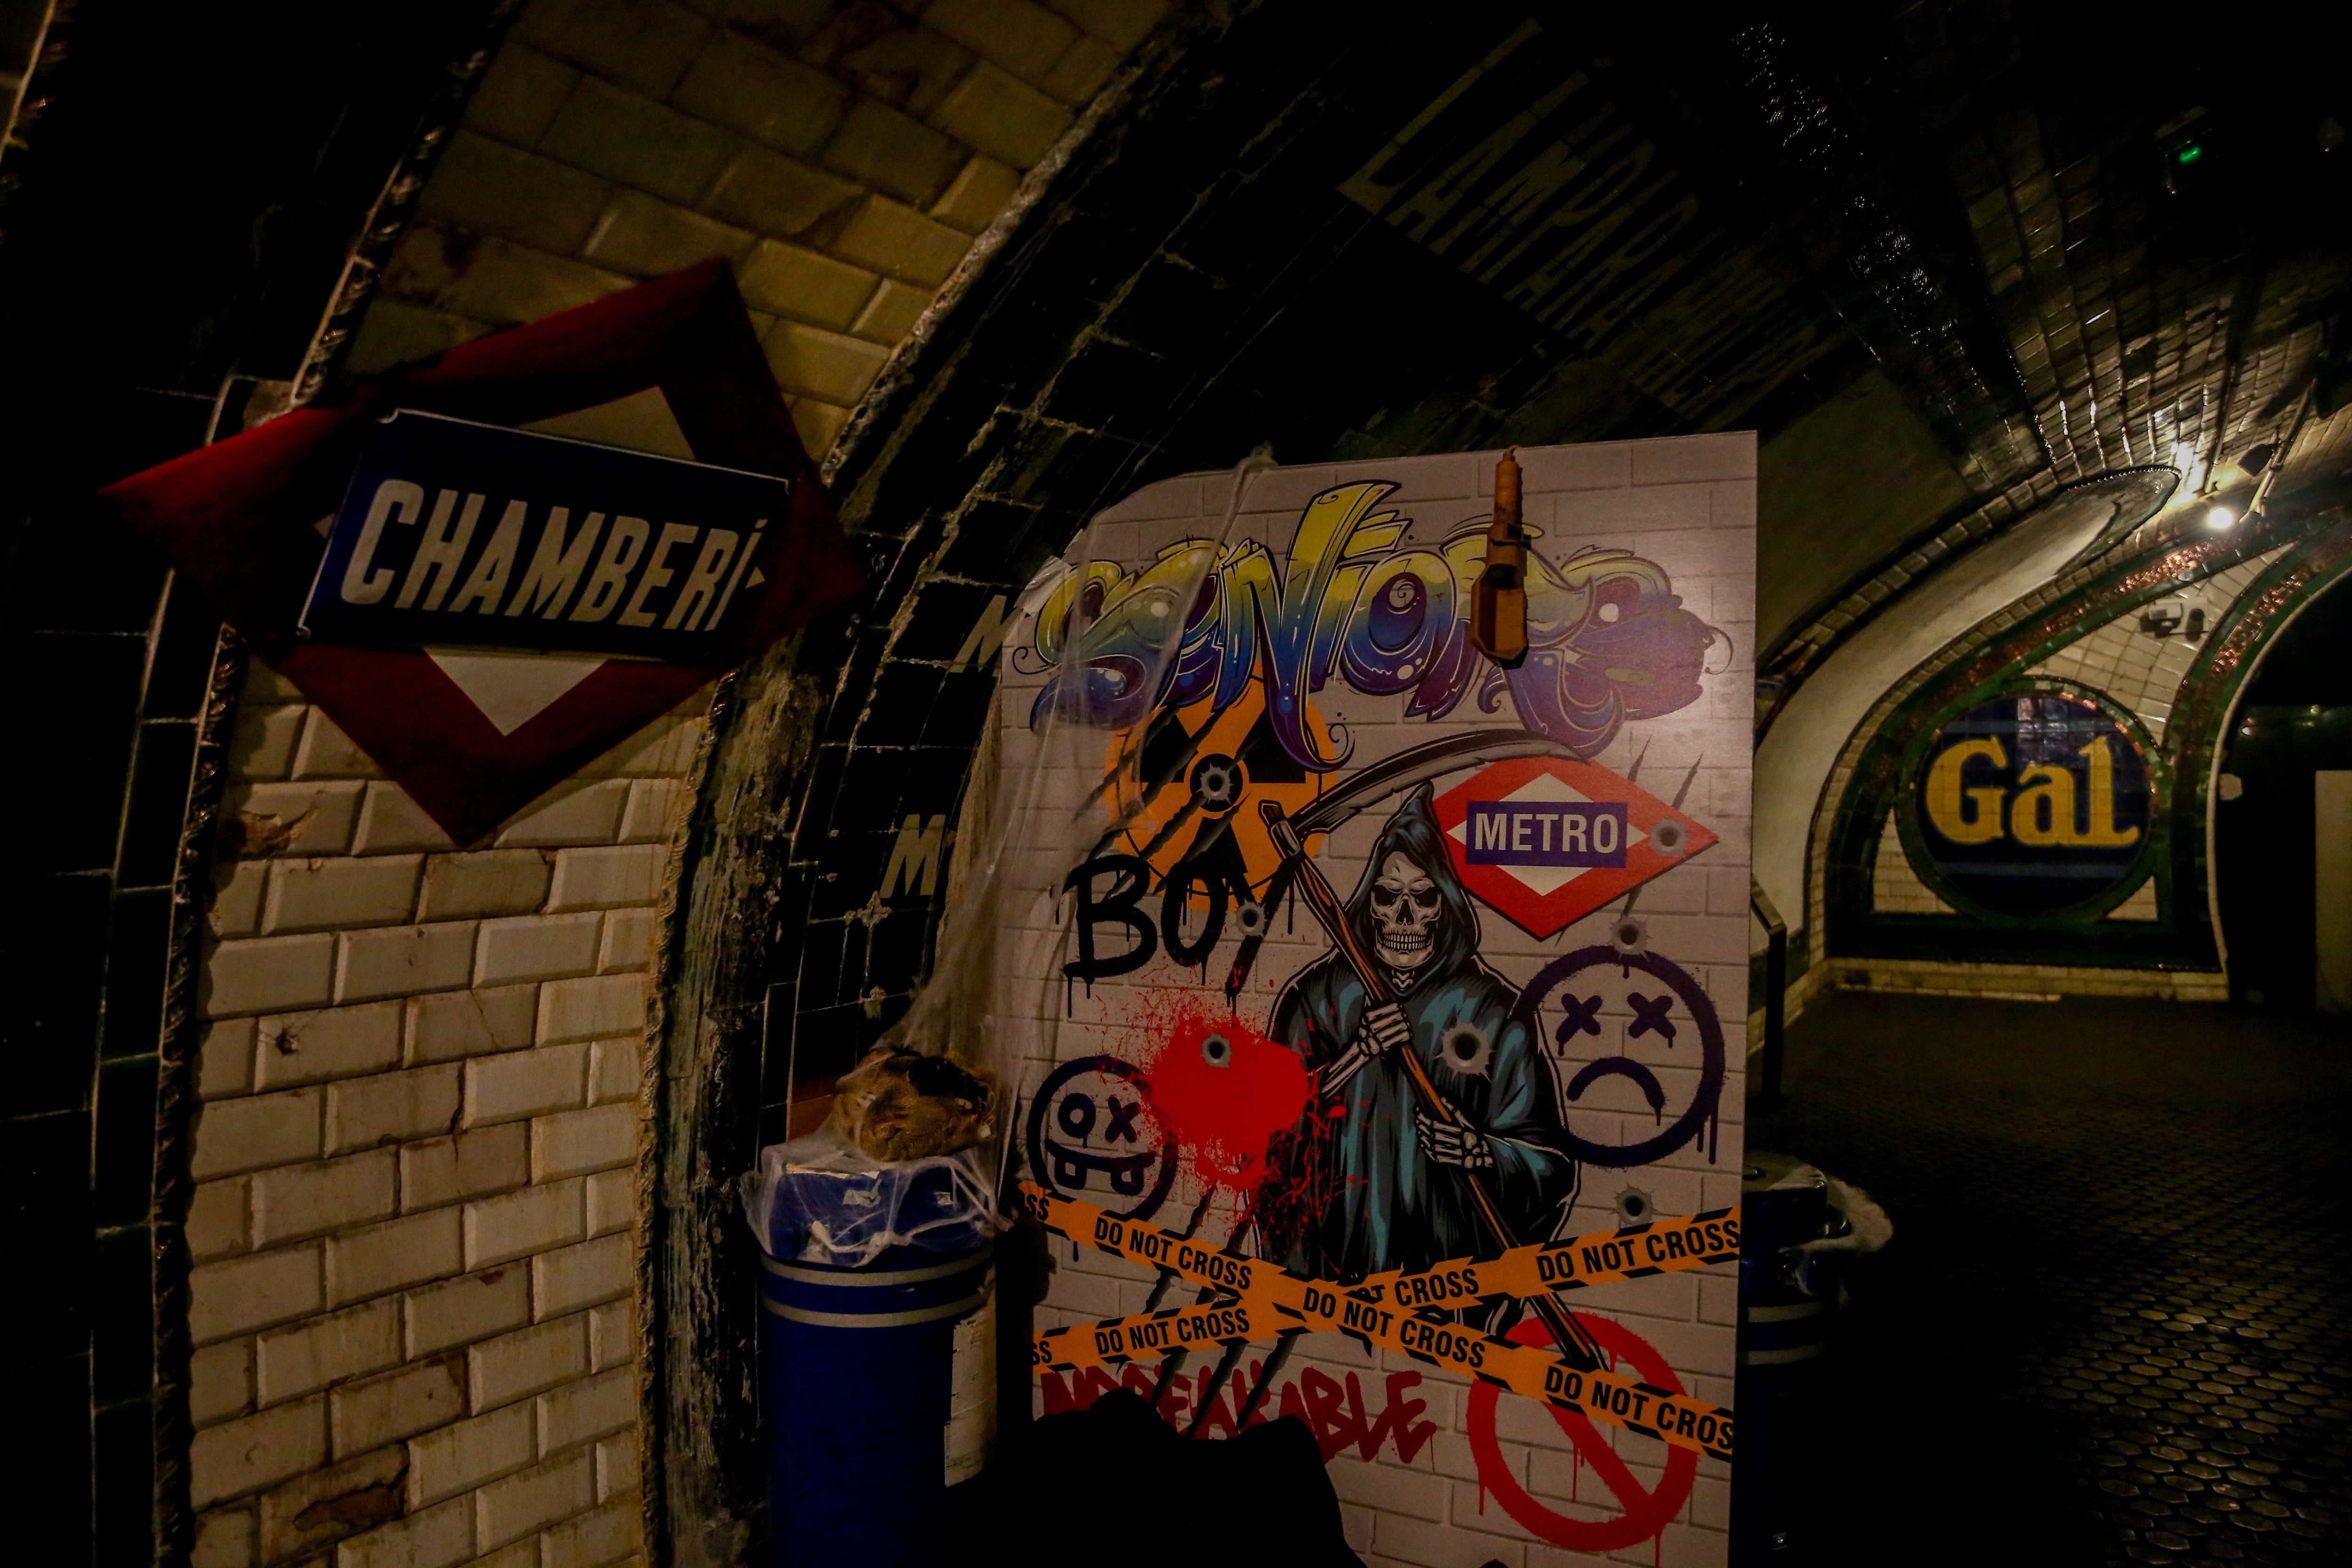 La estación fantasma de Chamberí revive este Halloween sus leyendas más terroríficas